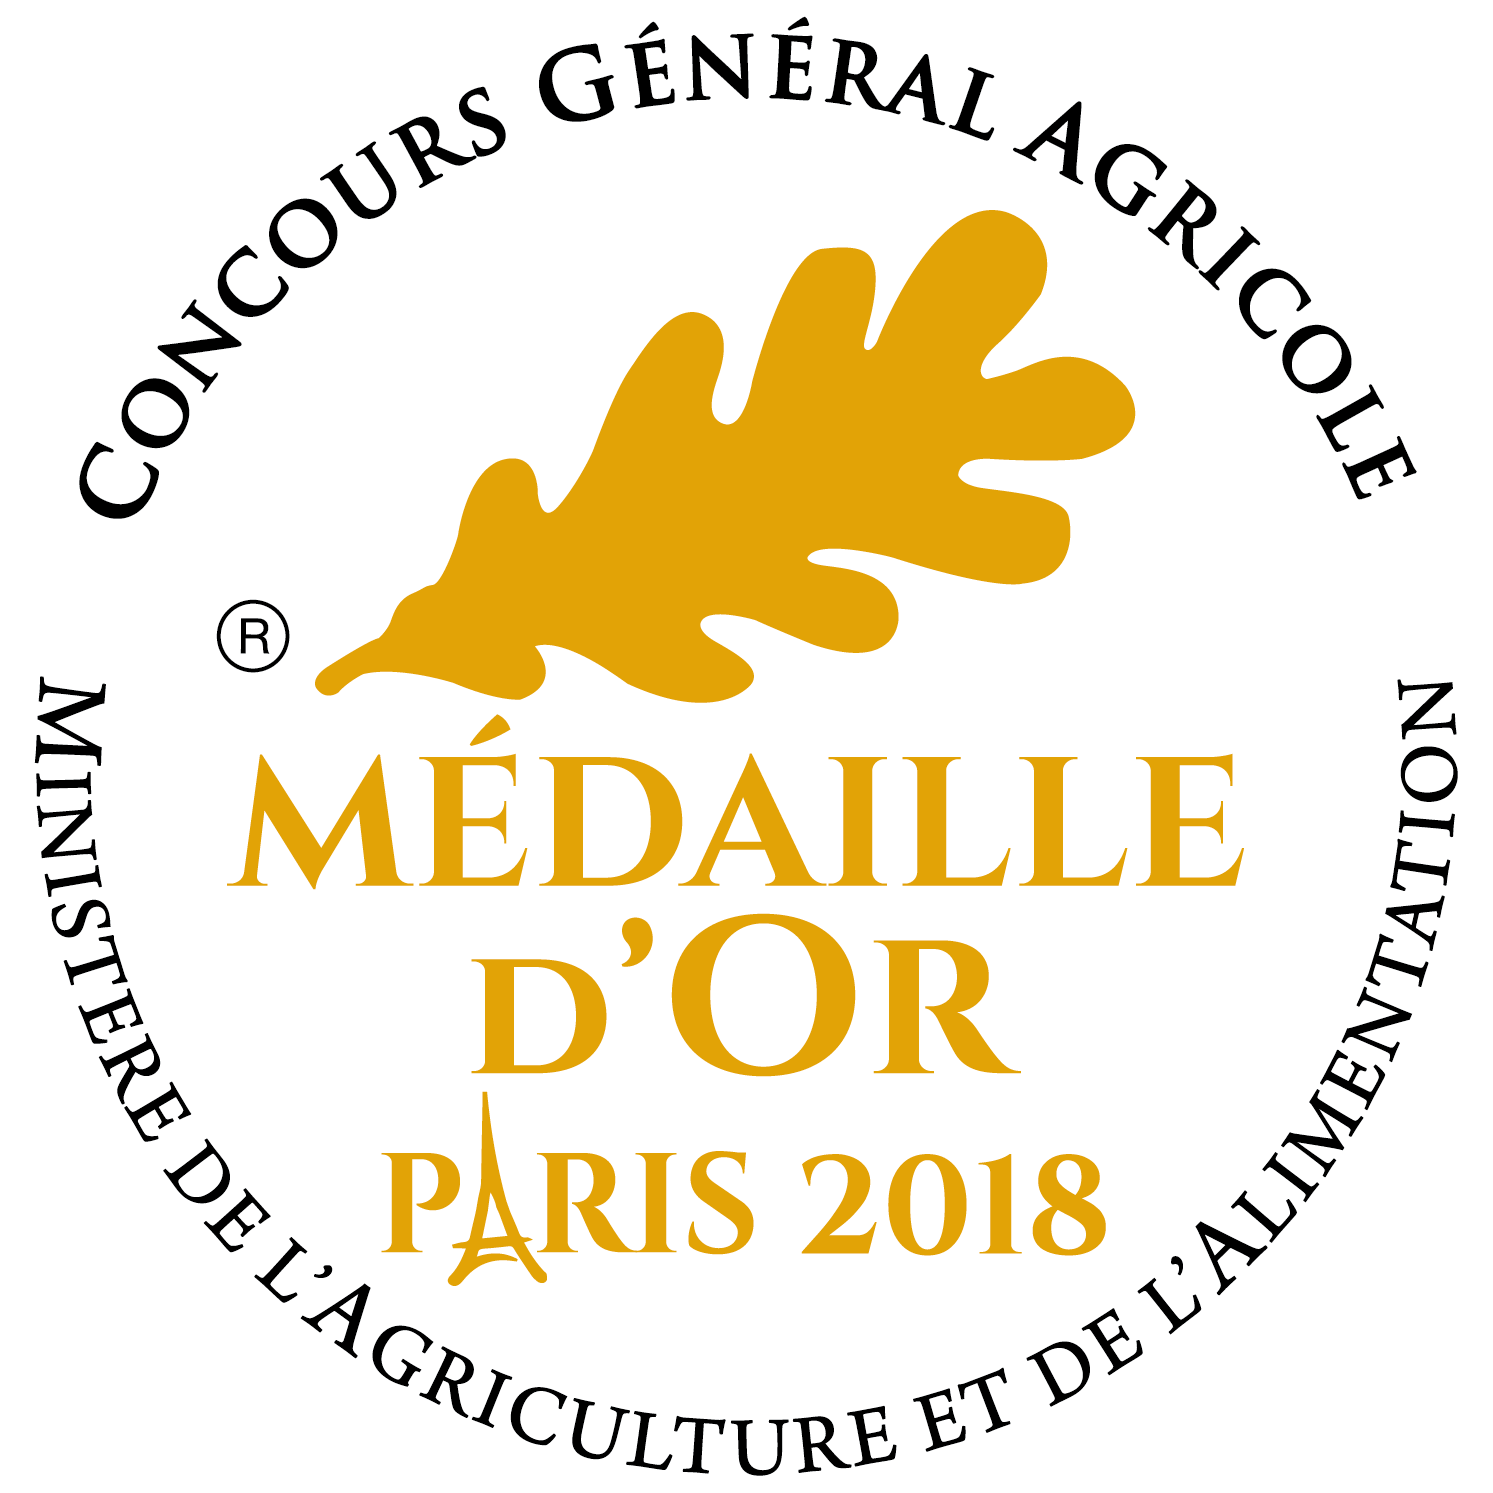 Gold Medal Concours Général Agricole Paris 2018